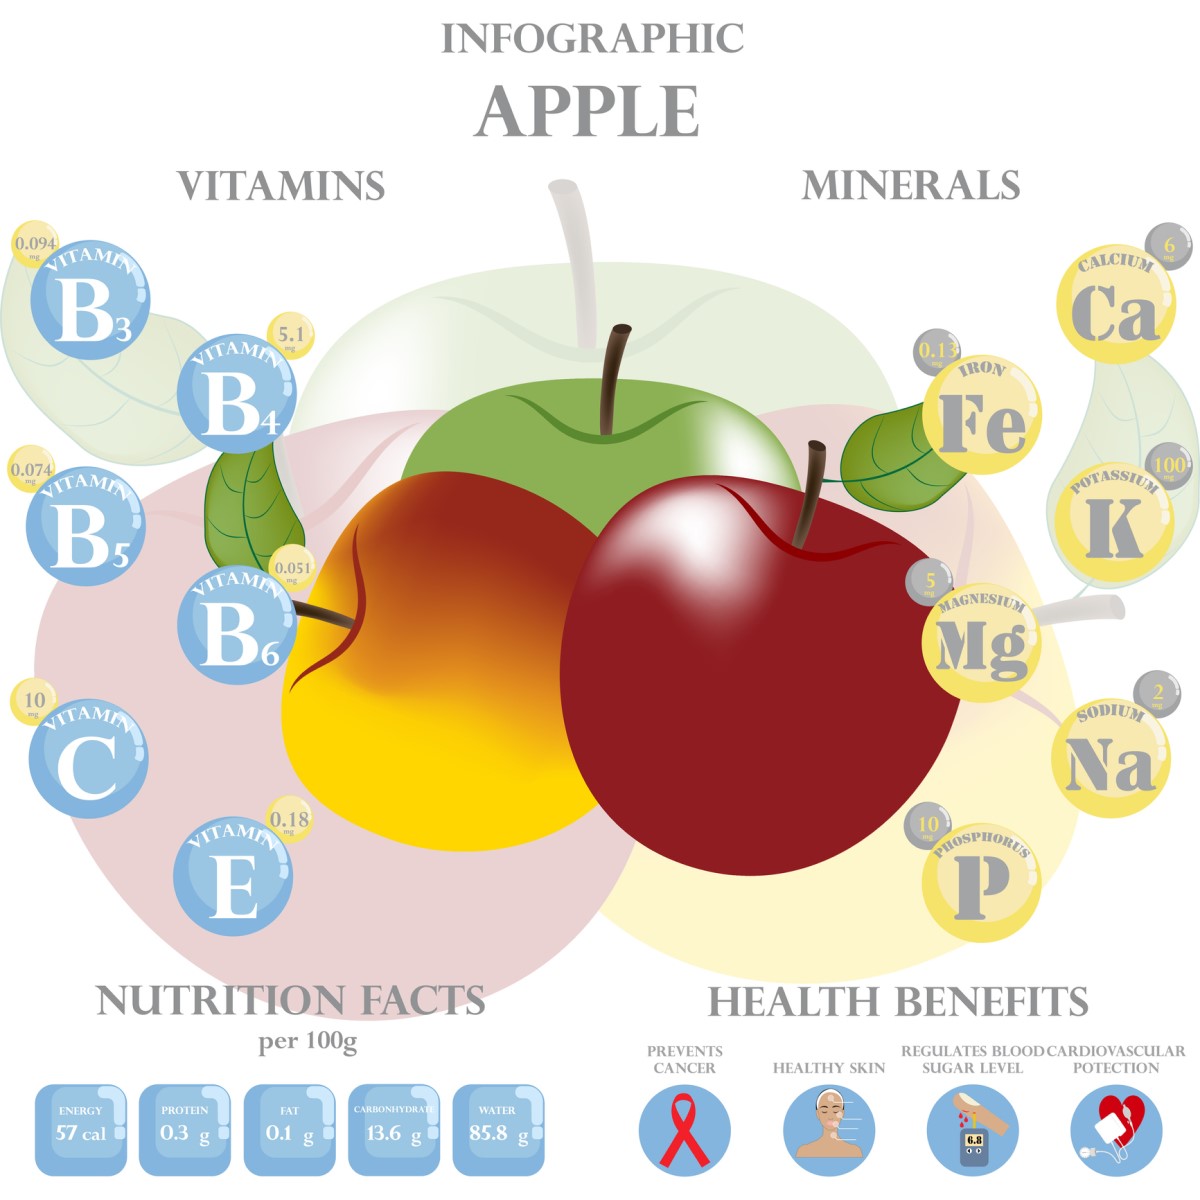 Obsah vitamínov a minerálov v jablkách. Nutričné hodnoty a zdravotné benefity pre človeka - jablká a vitamíny a minerály s približnými hodnotami - animovaná infografika